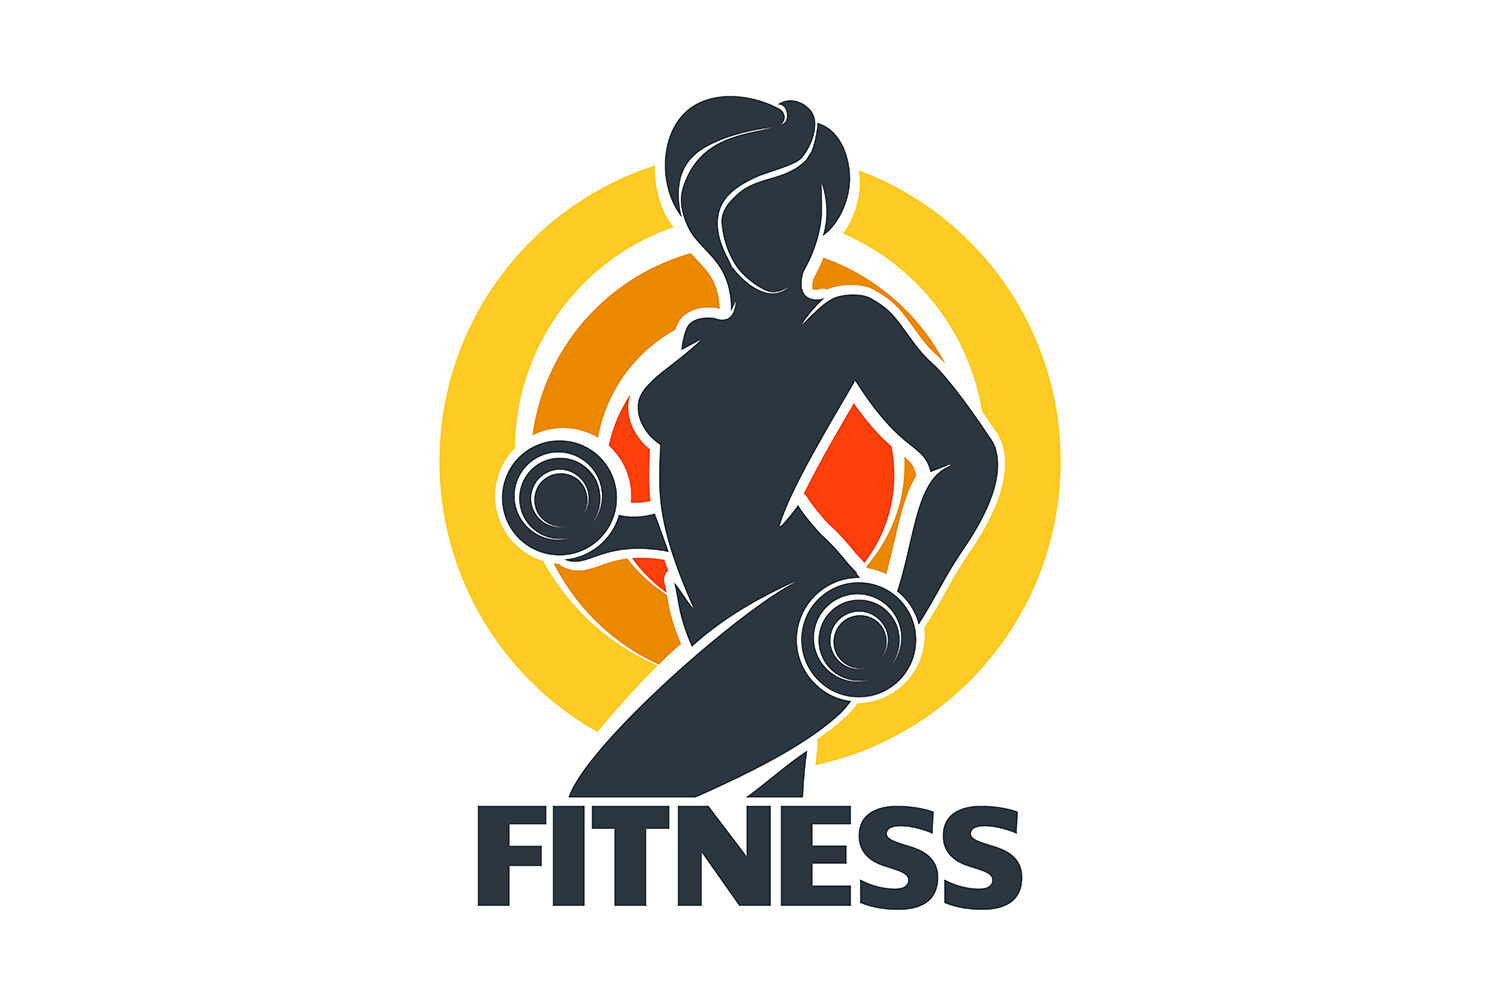 exercise logos